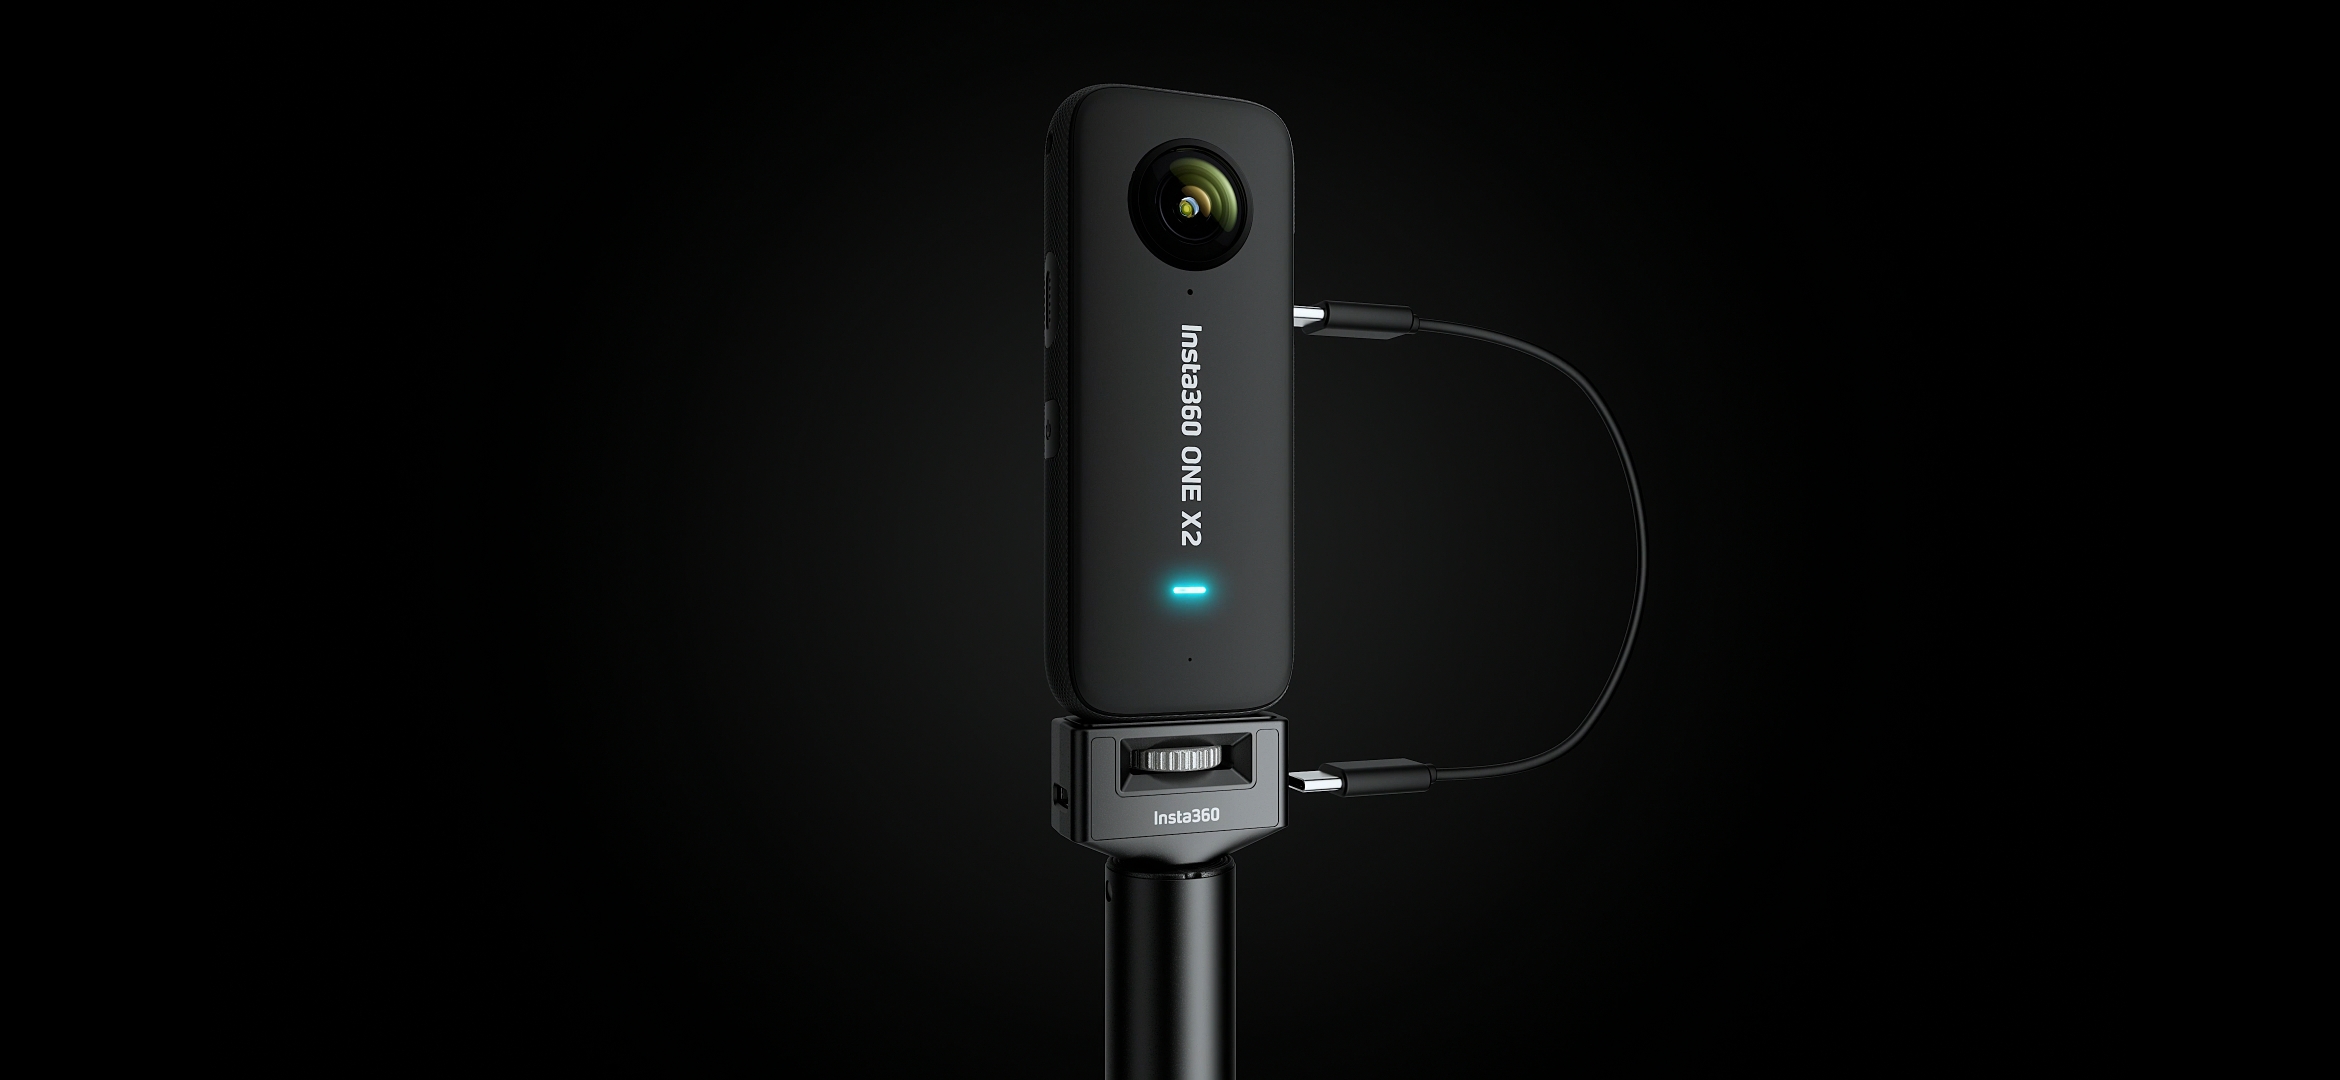 Insta360-Palo de Selfie Power, Control remoto para Insta 360 X3 / ONE X2 /  RS/R, accesorios originales